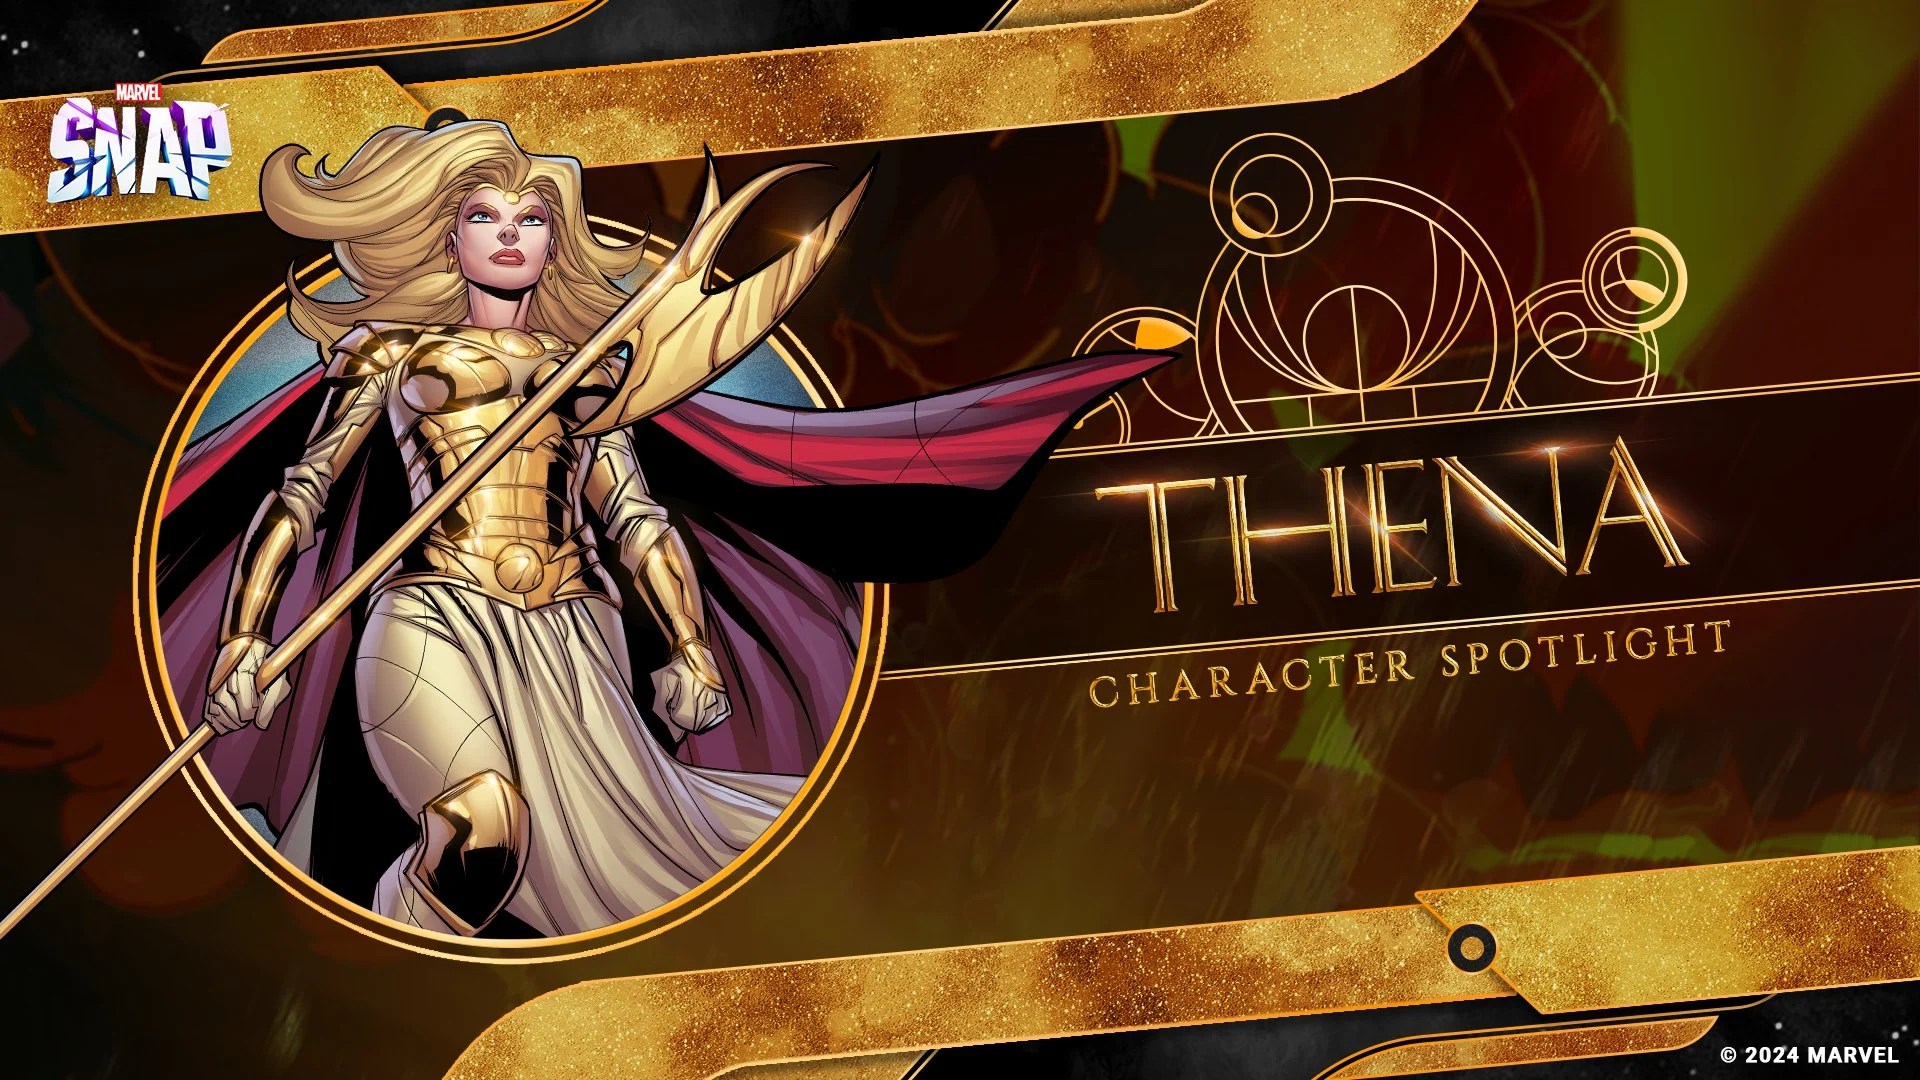 Marvel Snap Thena Character Spotlight